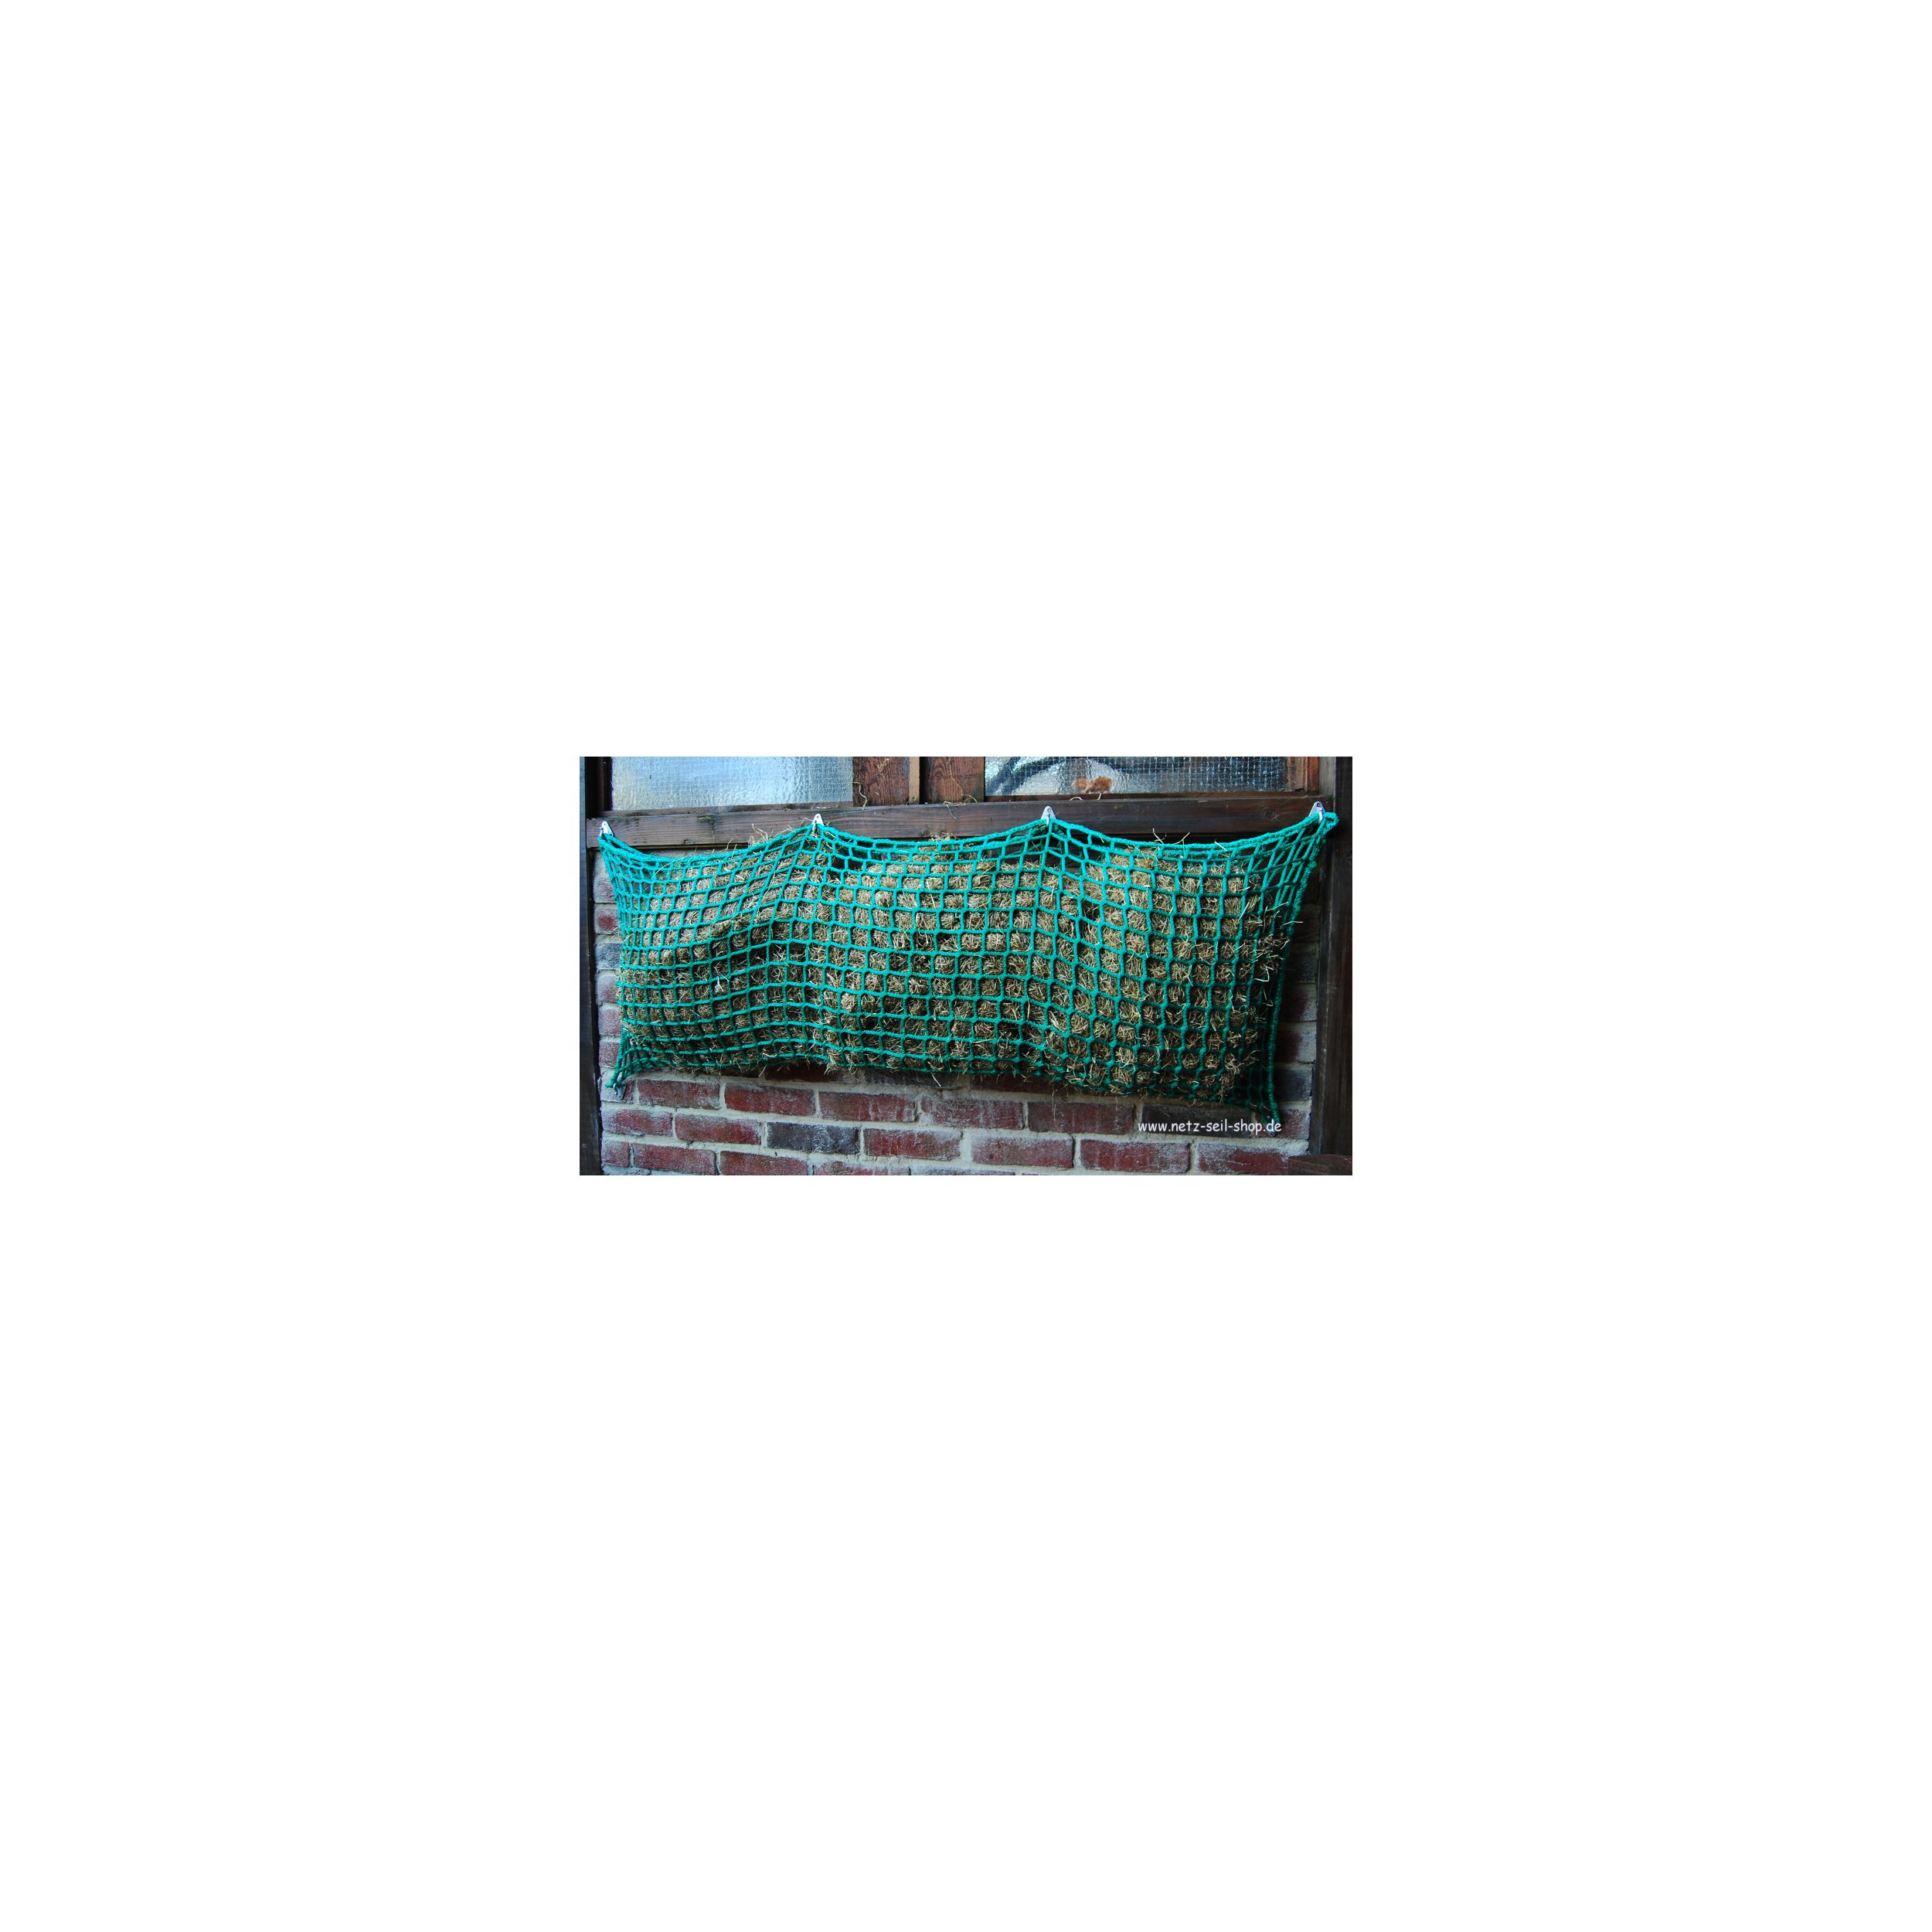 Hooi net in zakvorm, 1,20 m breed, hoogte 1,00 m Ø 5 mm garen dikte, # 30 mm maas